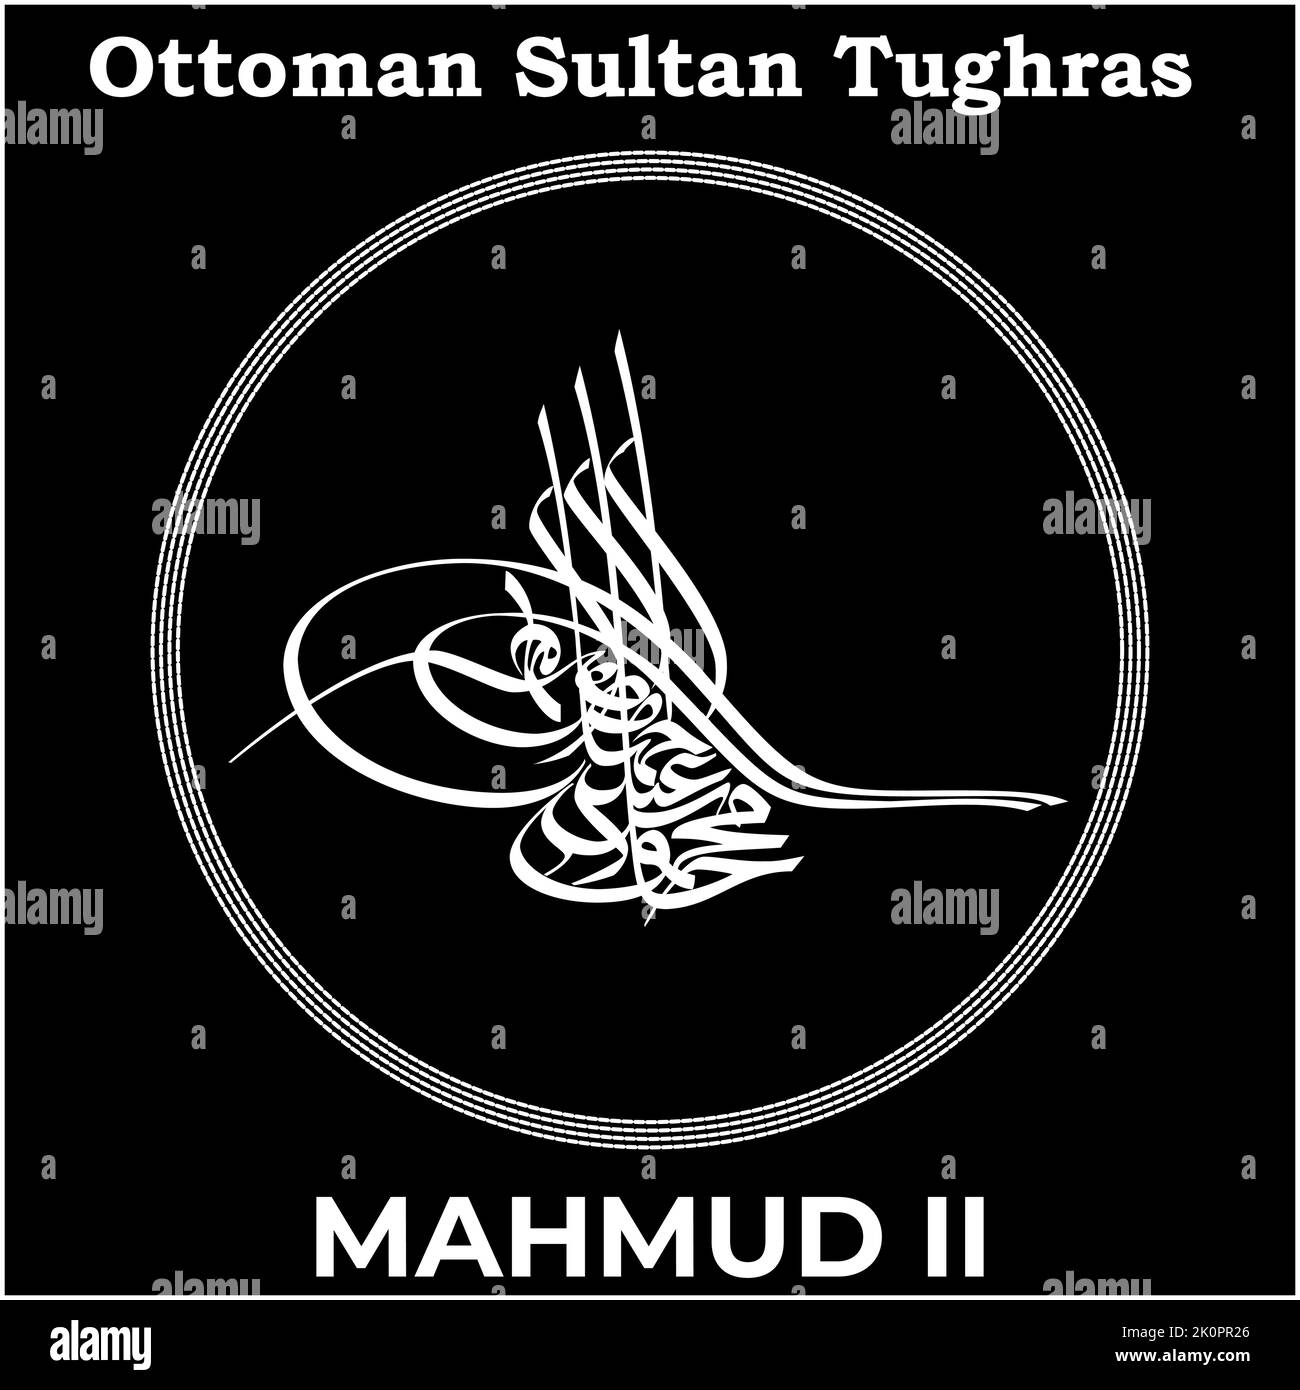 Vektorbild mit Tughra-Signatur des osmanischen dreißigsten Sultans Mahmud II., Tughra von Mahmud II. Mit schwarzem Hintergrund. Stock Vektor